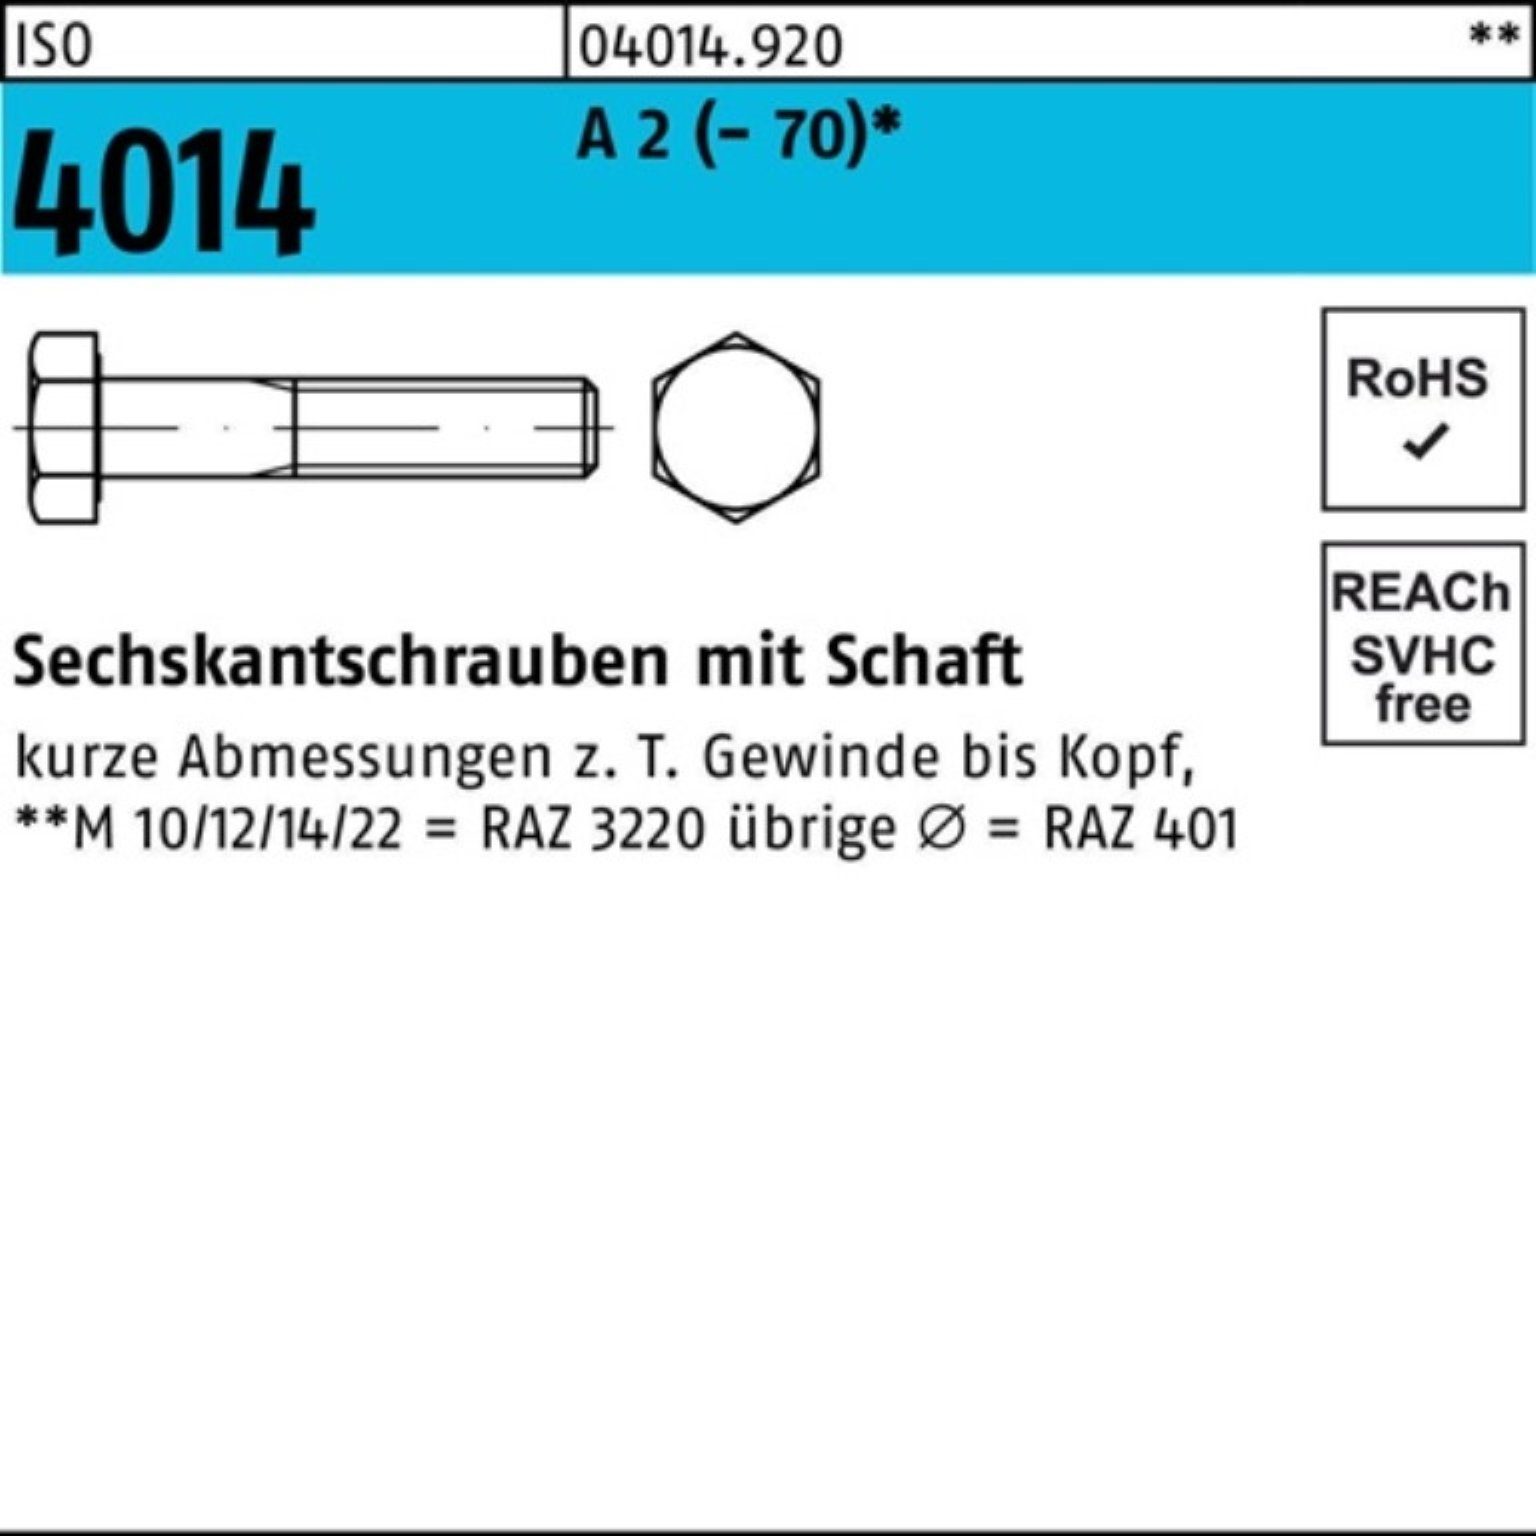 Bufab Sechskantschraube 100er Pack Sechskantschraube ISO 4014 Schaft M8x 35 A 2 (70) 100 St